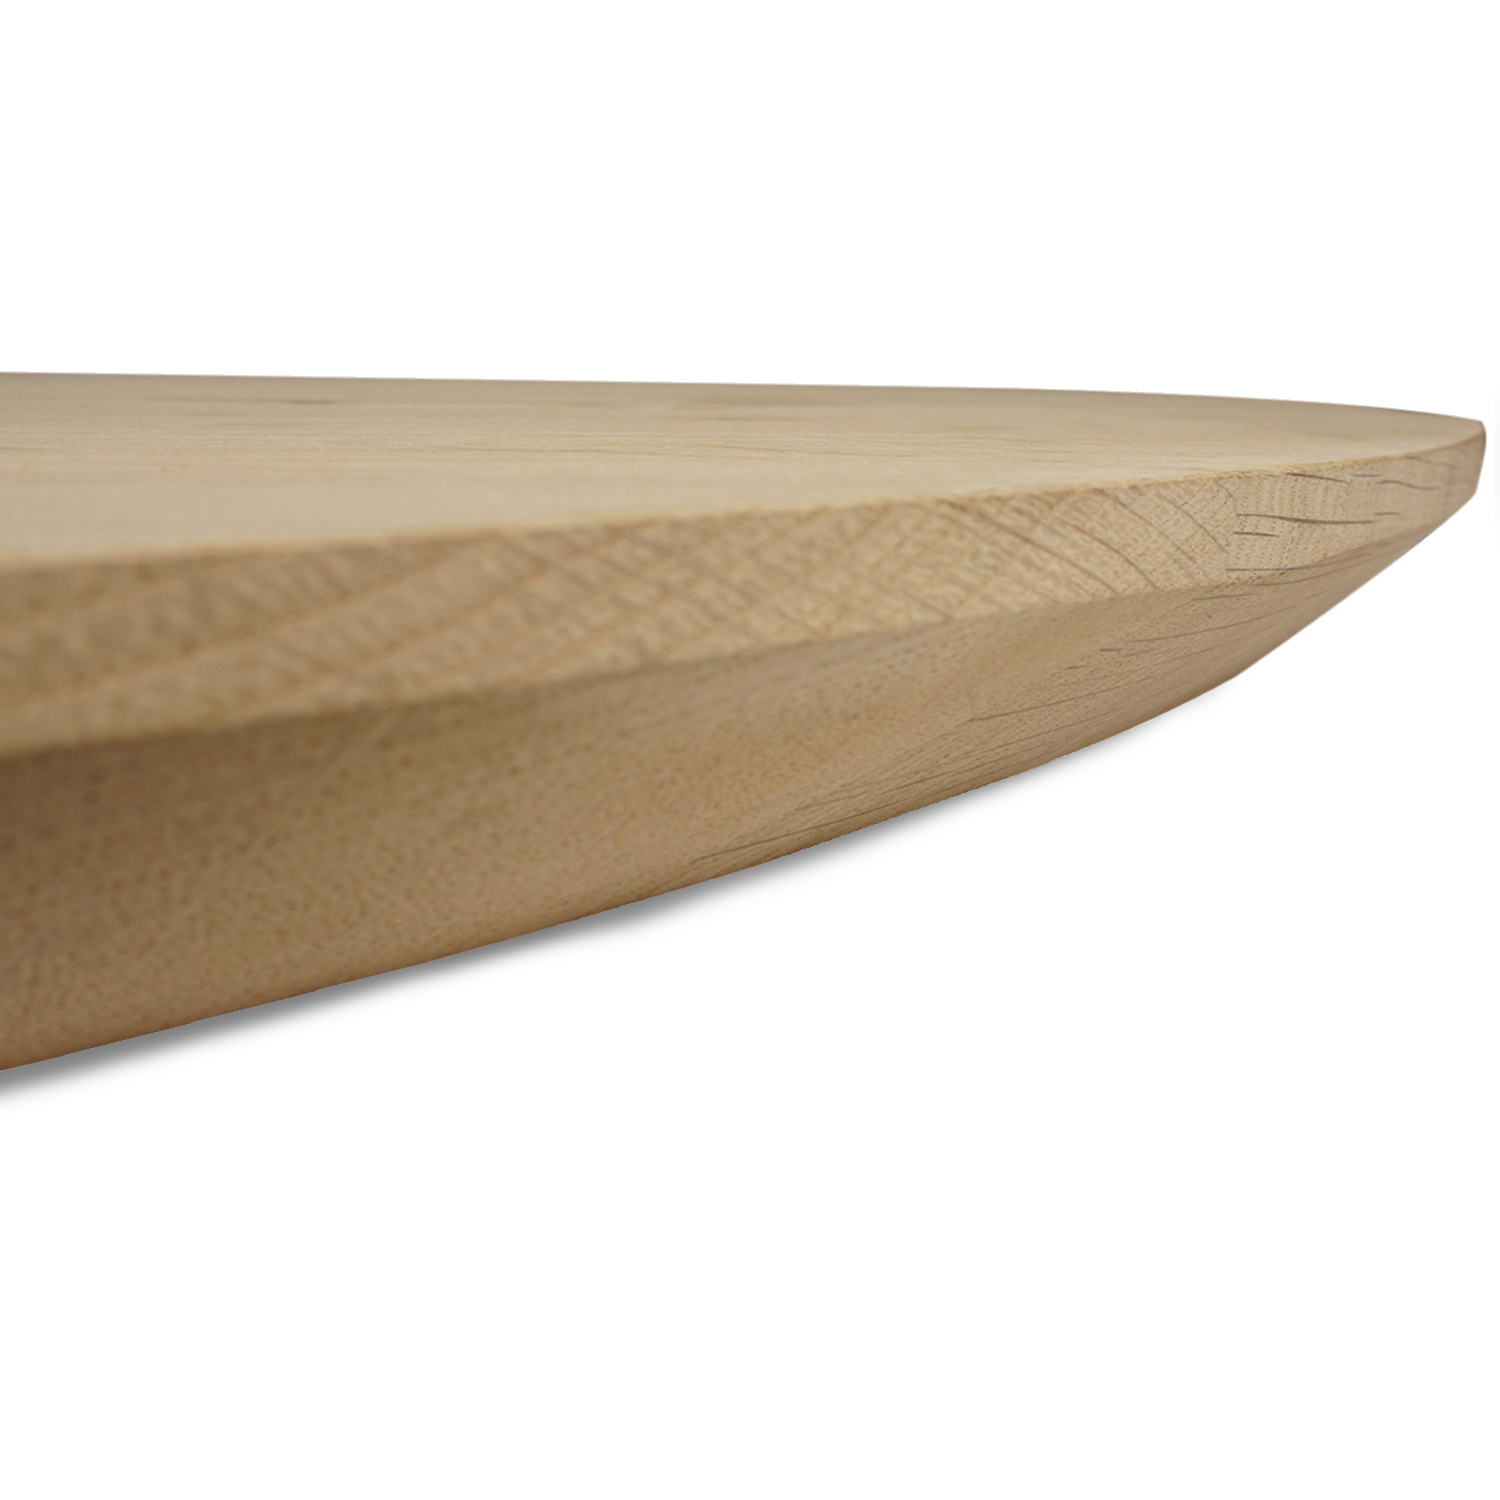  Rond eiken tafelblad op maat - 4 cm dik (1-laag) - Foutvrij Europees eikenhout - verlijmd kd 8-12% - diameter van 30 tot 180 cm